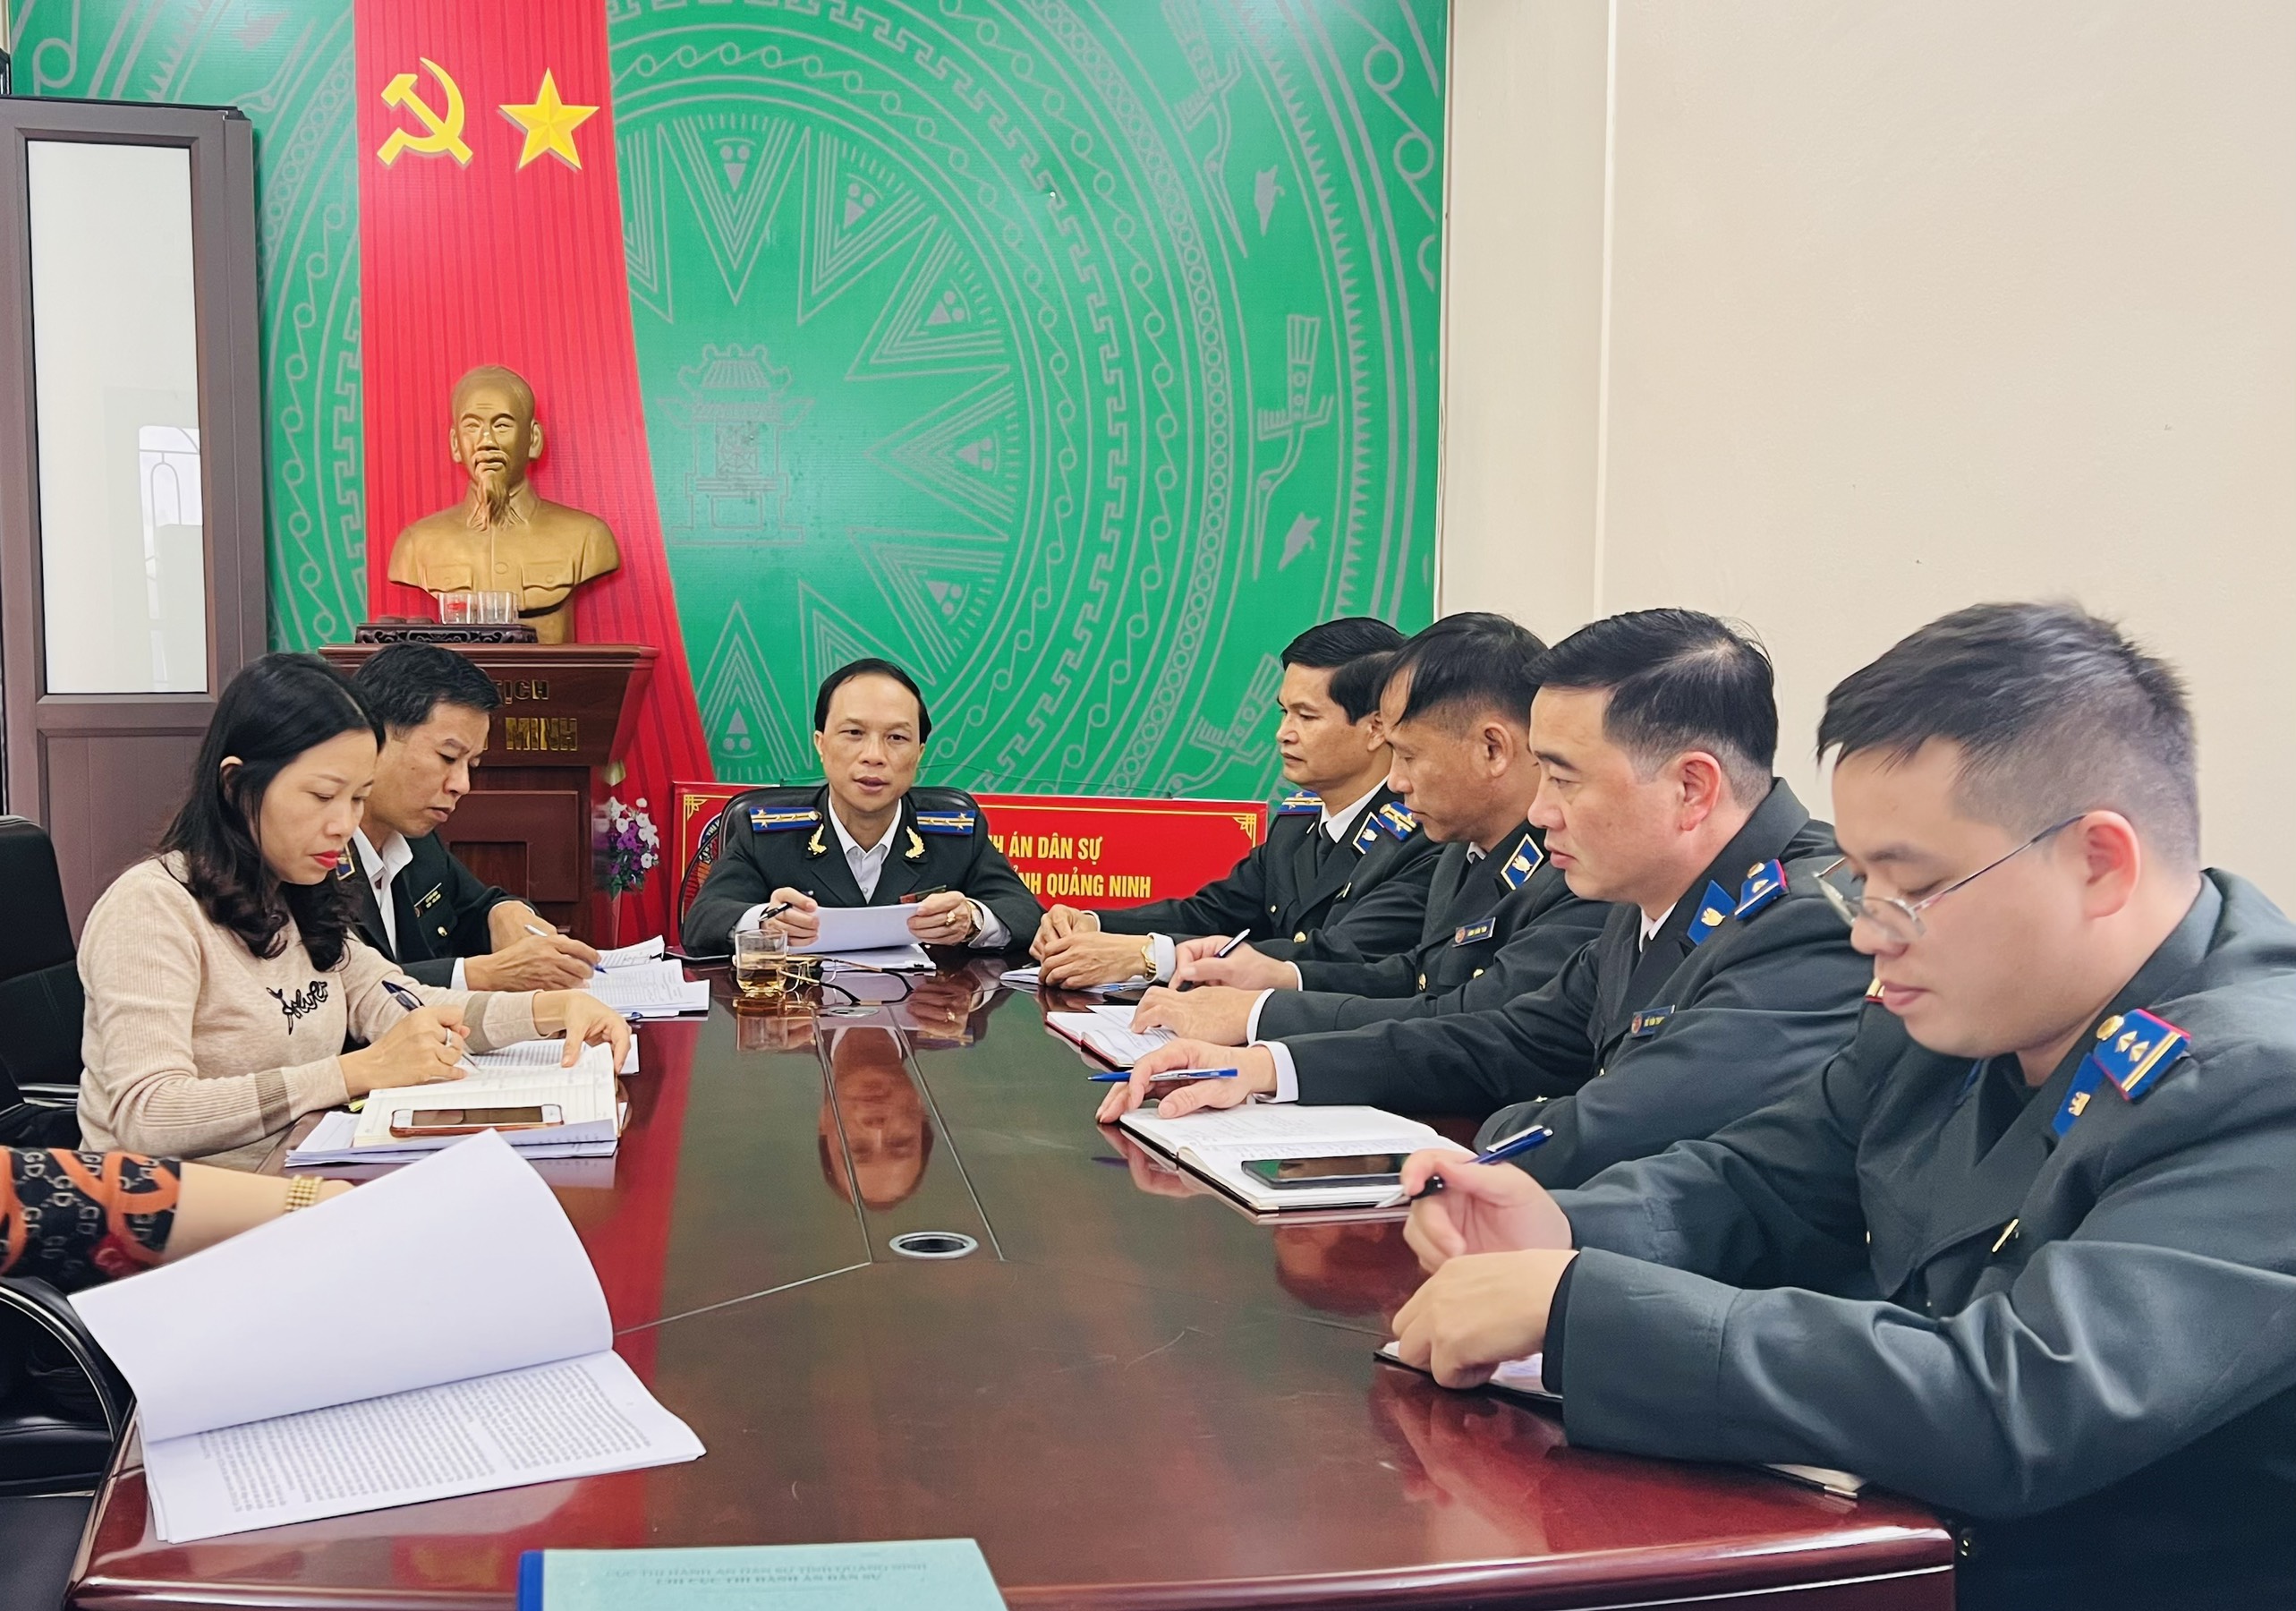 Tổ Chỉ đạo xử lý các vụ việc liên quan đến hoạt động  tín dụng, ngân hàng - Cục Thi hành án dân sự tỉnh Quảng Ninh làm việc tại Chi cục Thi hành án dân sự huyện Hải Hà